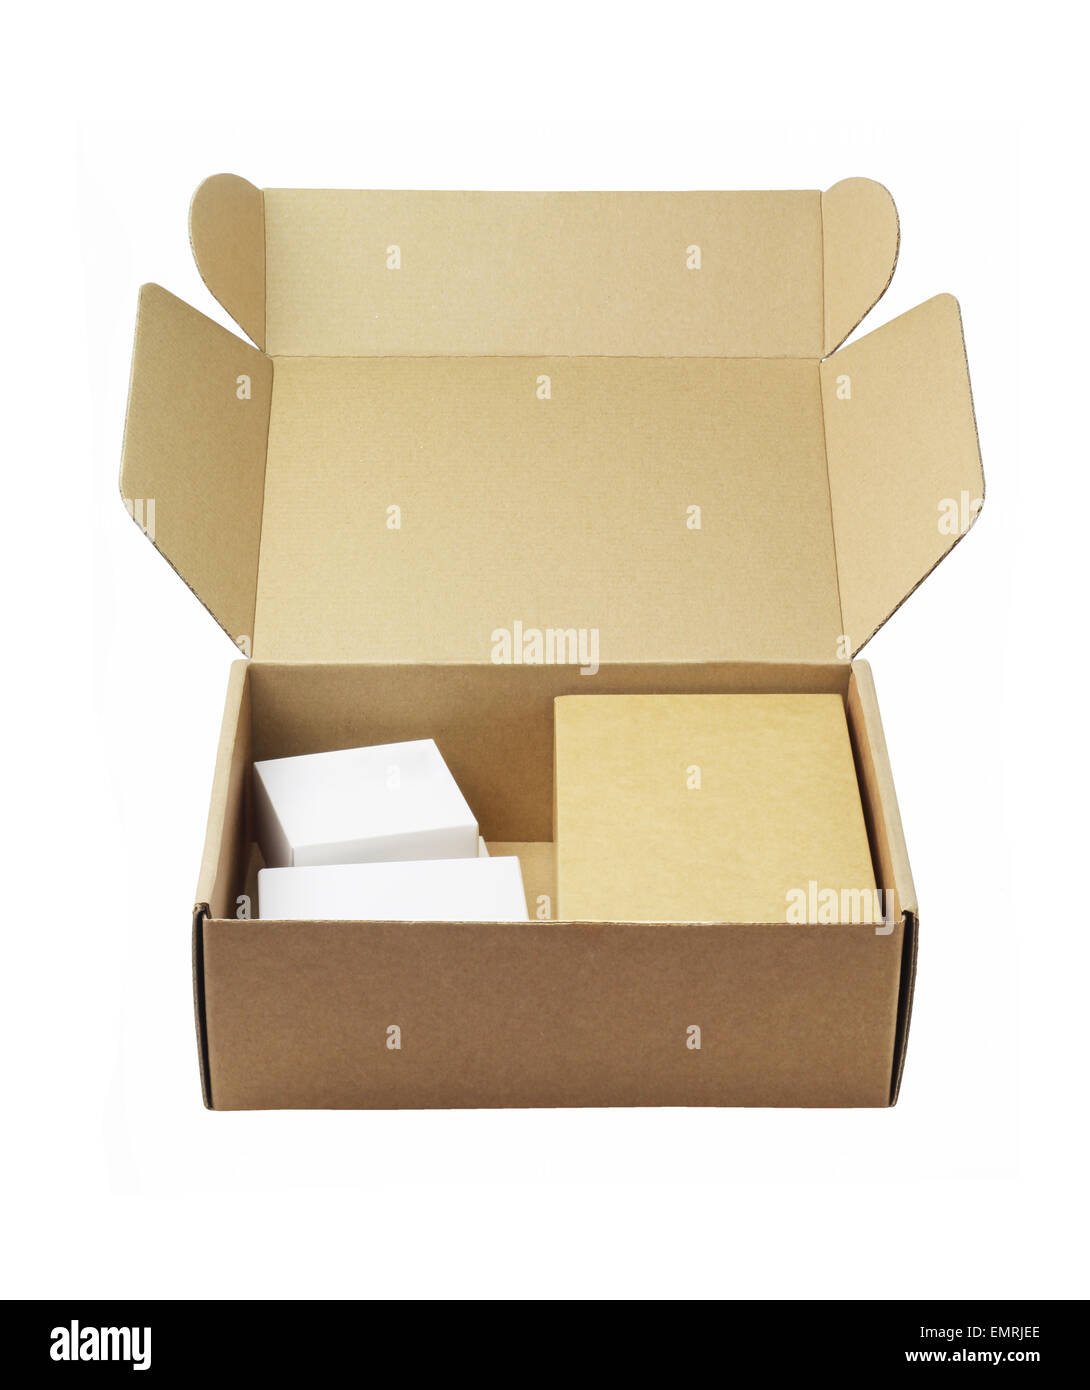 El Alamo, Cajas de Cartón – Cajas de Línea, Cajas a la Medida, Cartón  Corrugado